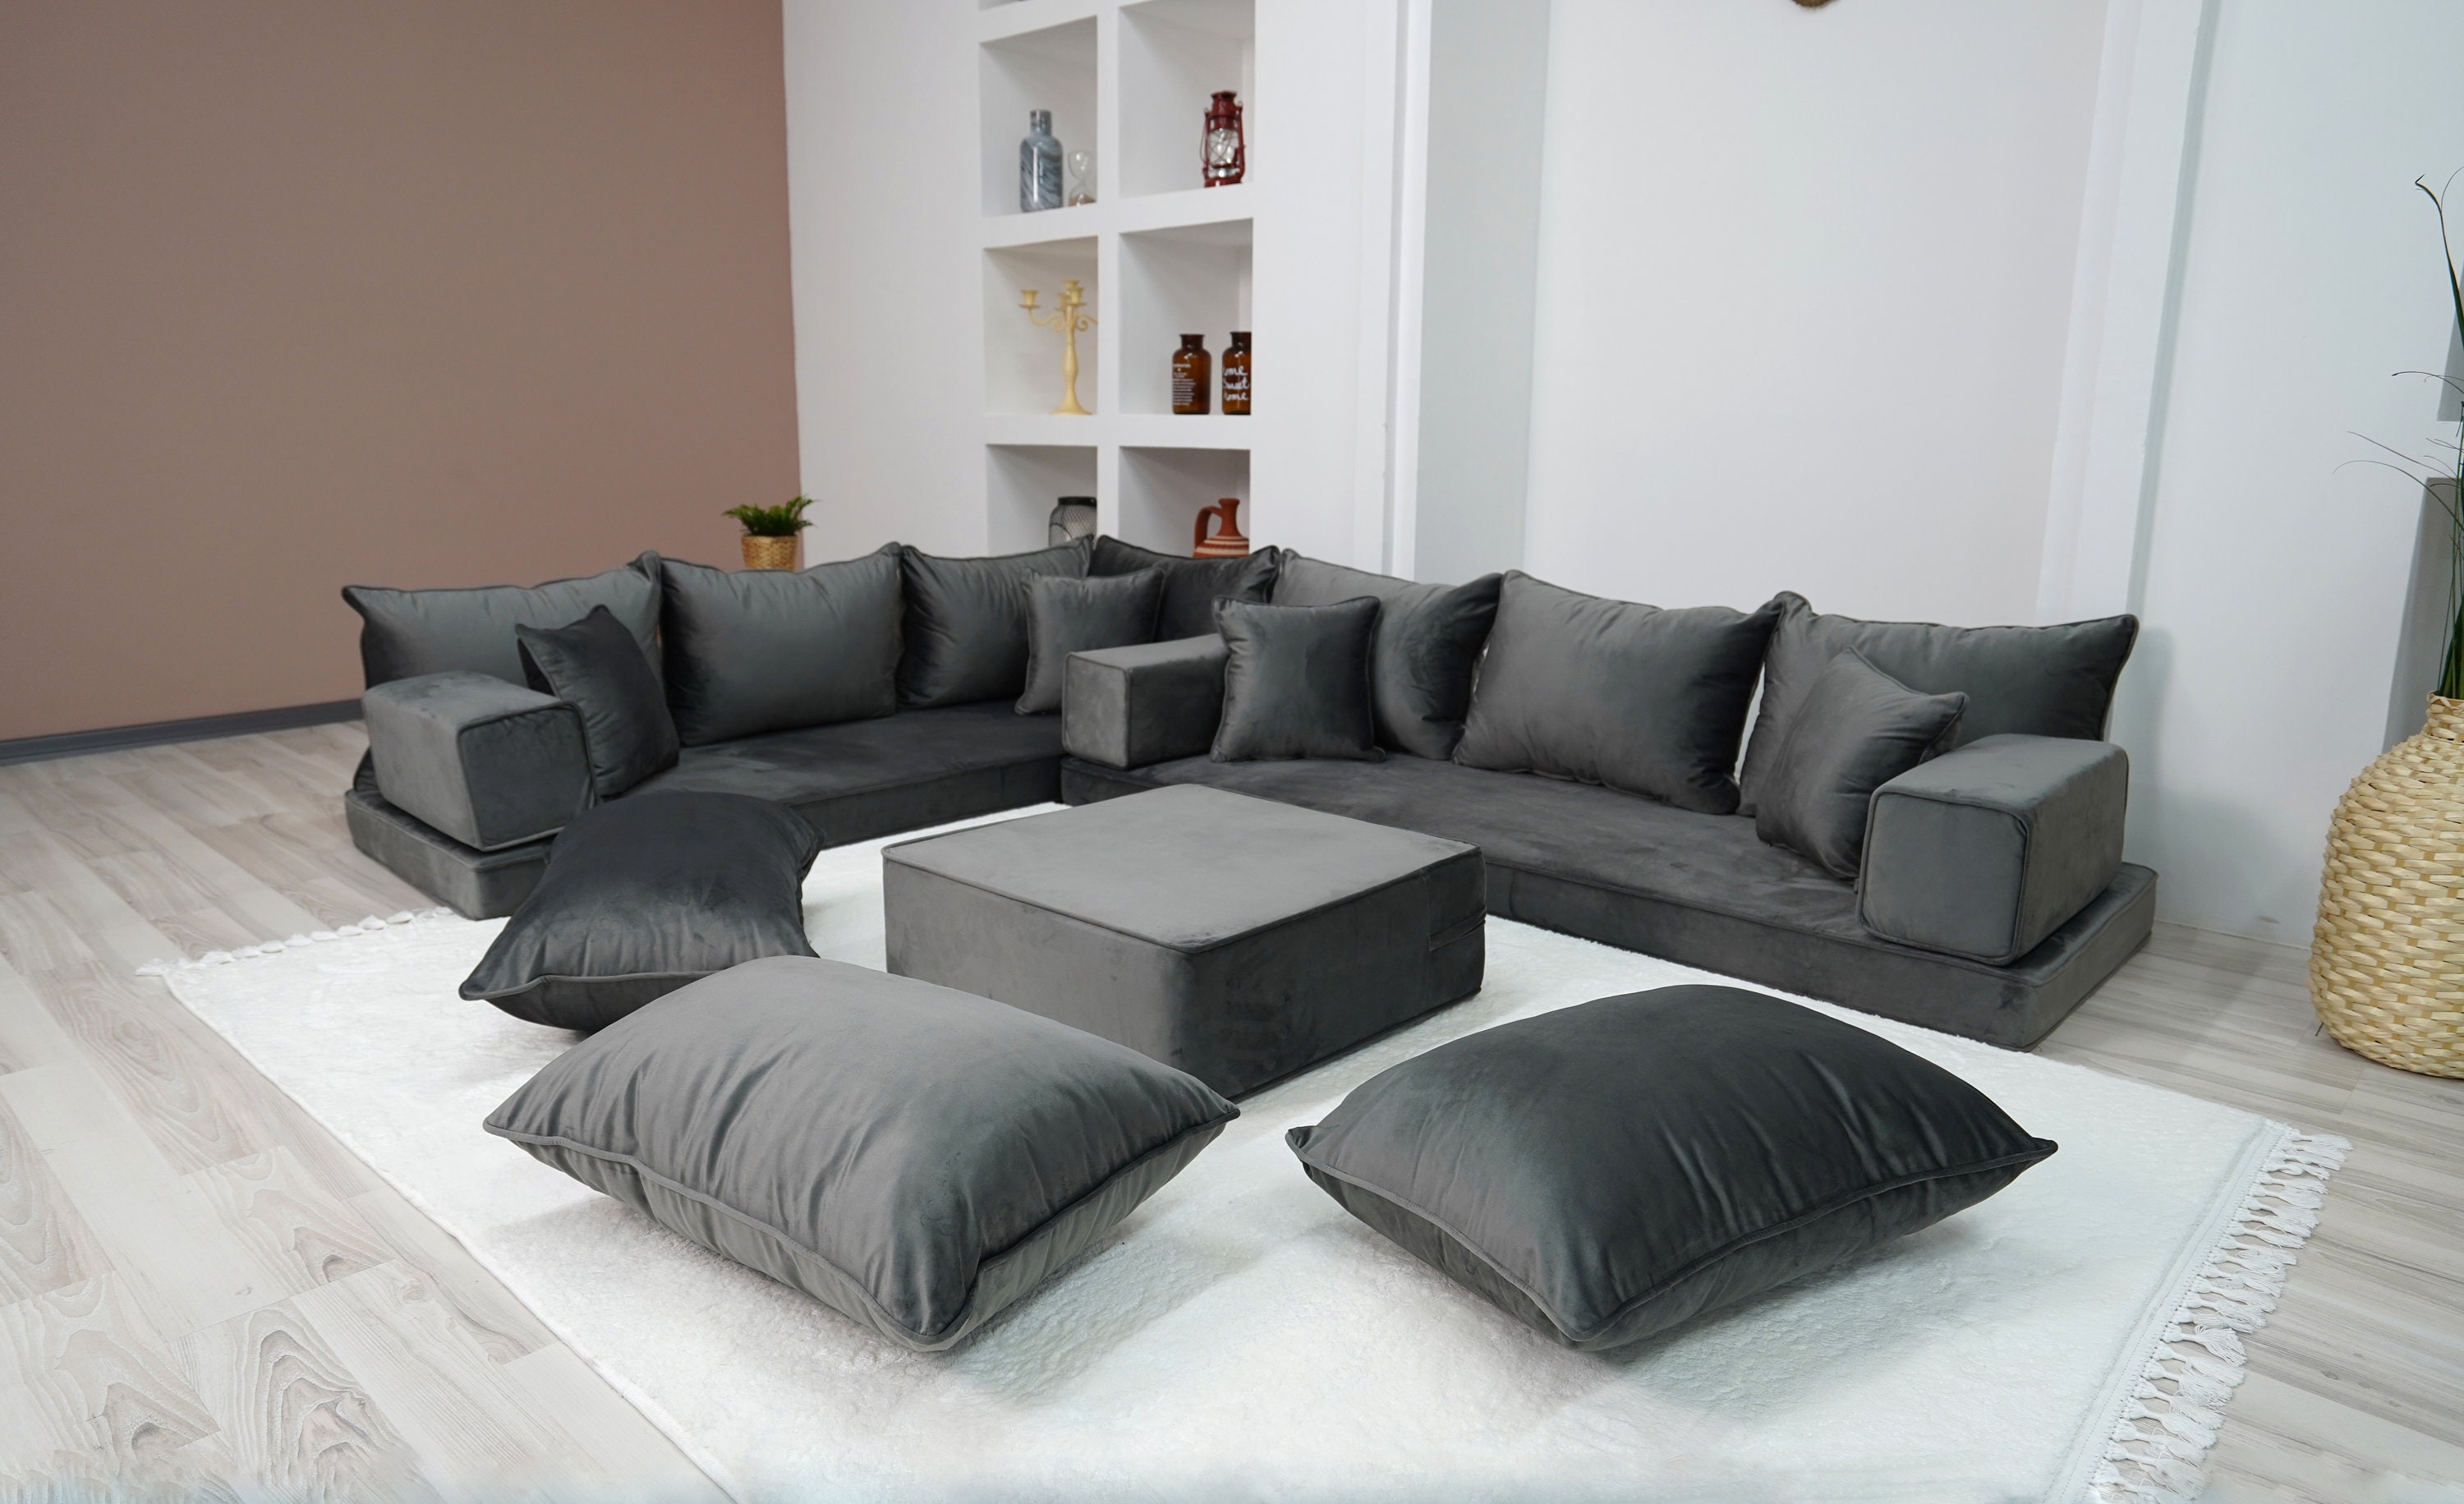 Cojines para la sala  Living room decor colors, Decor home living room,  Black couch living room decor